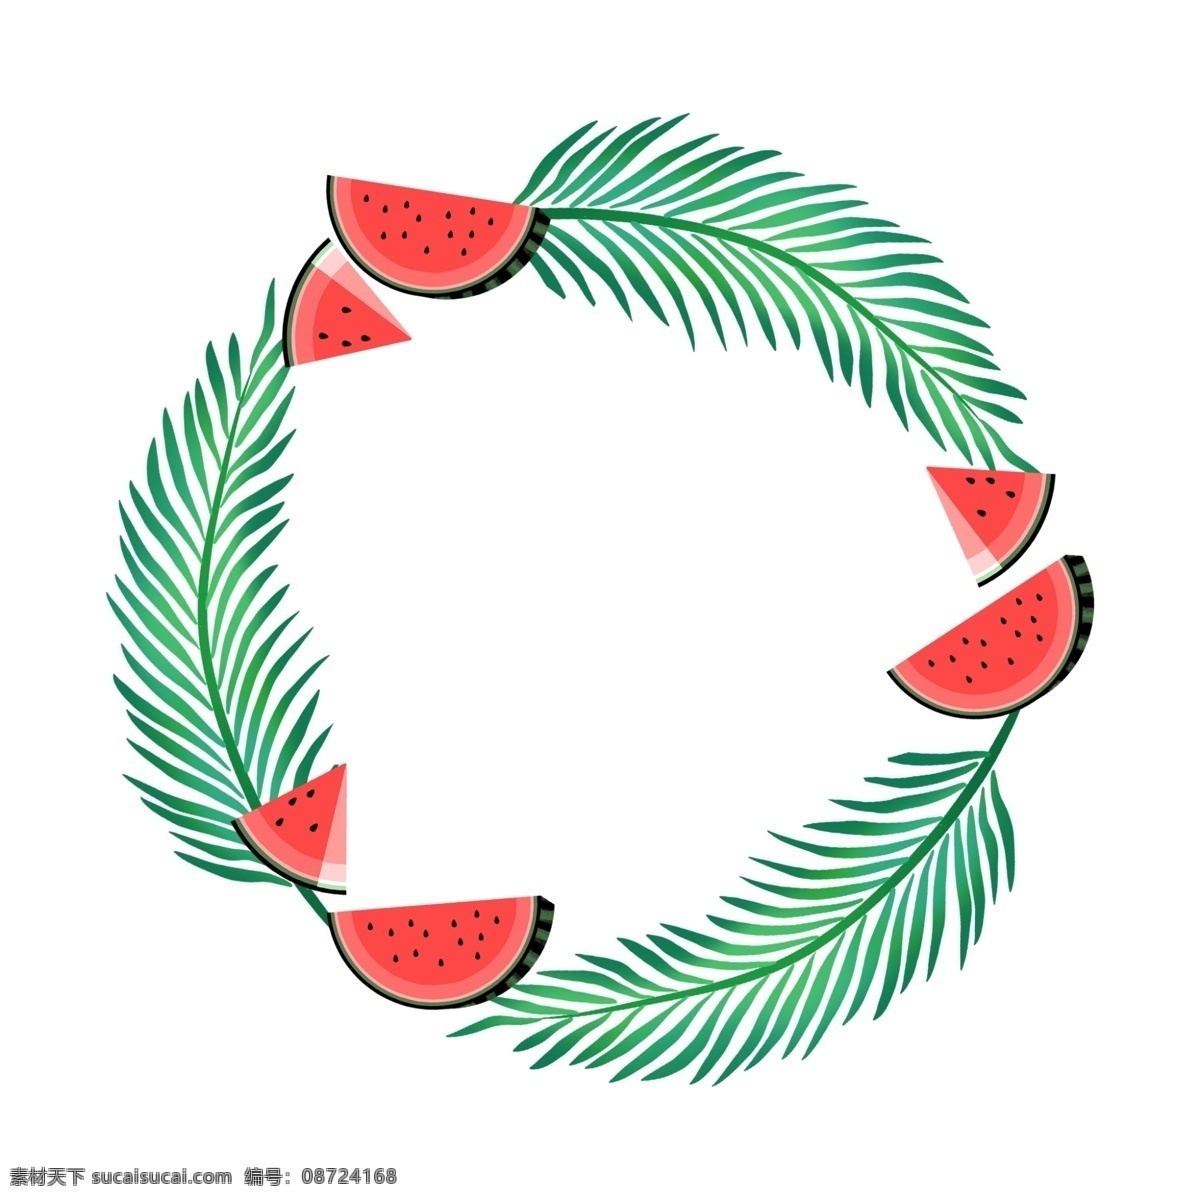 西瓜 棕榈 叶 圆形 边框 水果 夏季 小清新 绿色 红色 叶子 圆形边框 文本框 西瓜边框